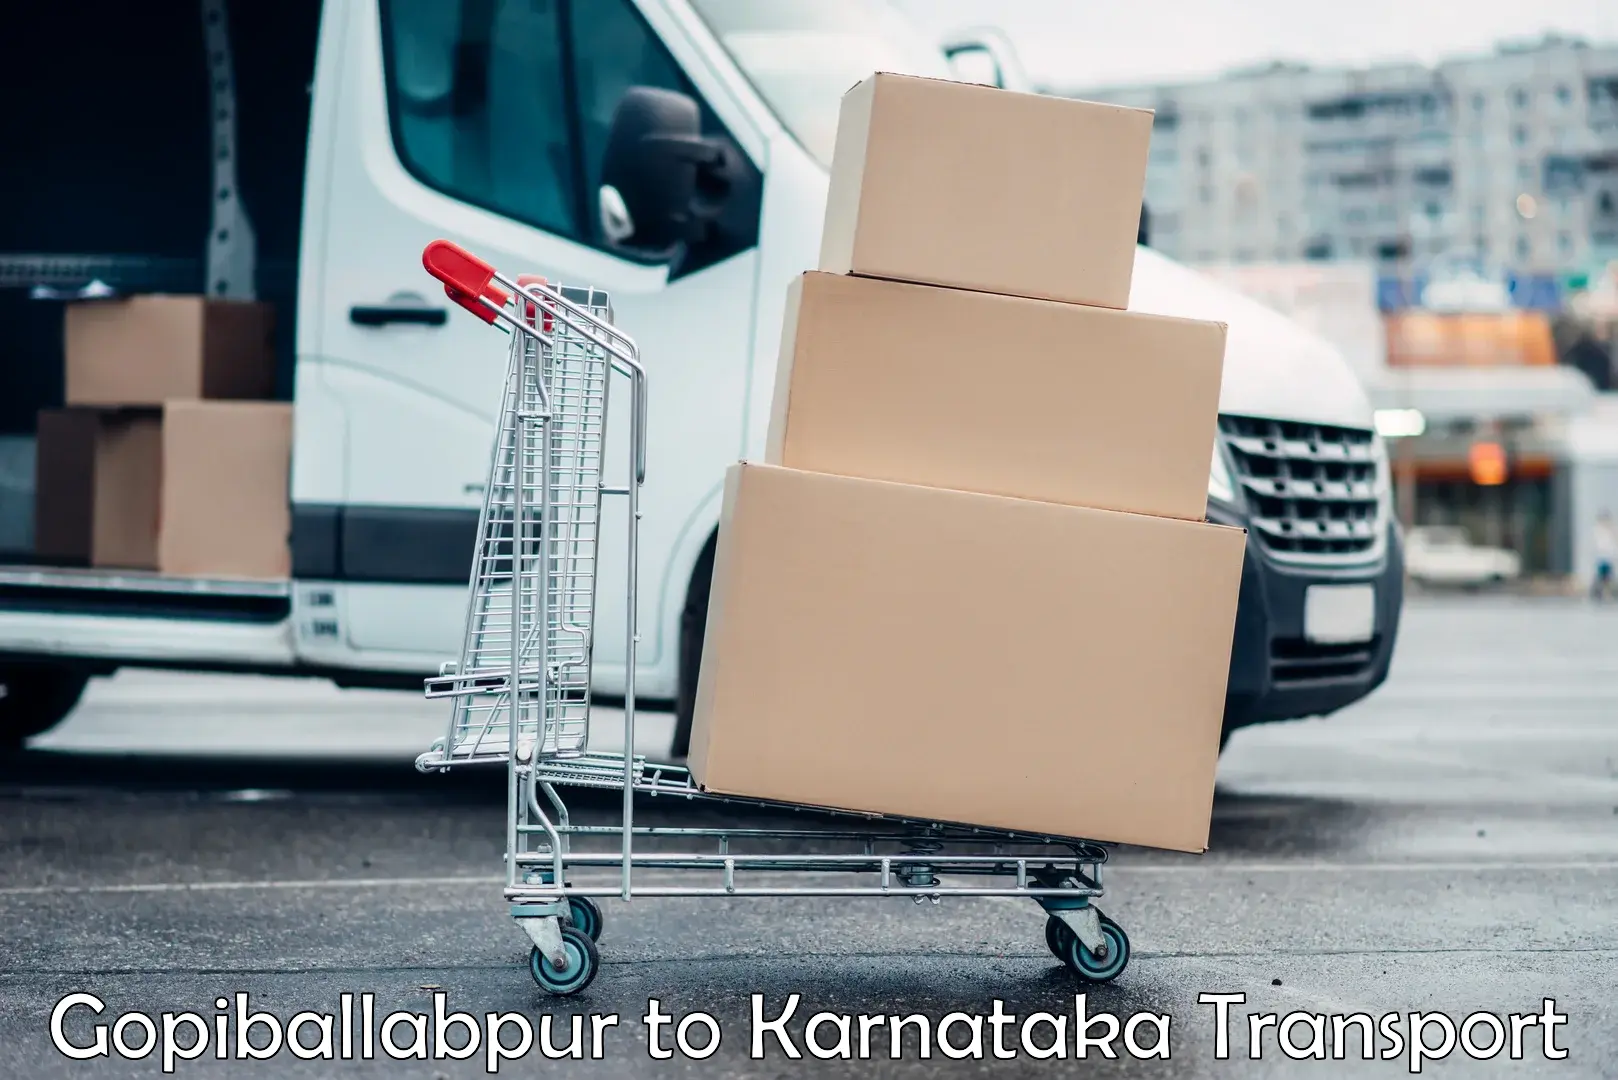 Delivery service Gopiballabpur to Kushtagi